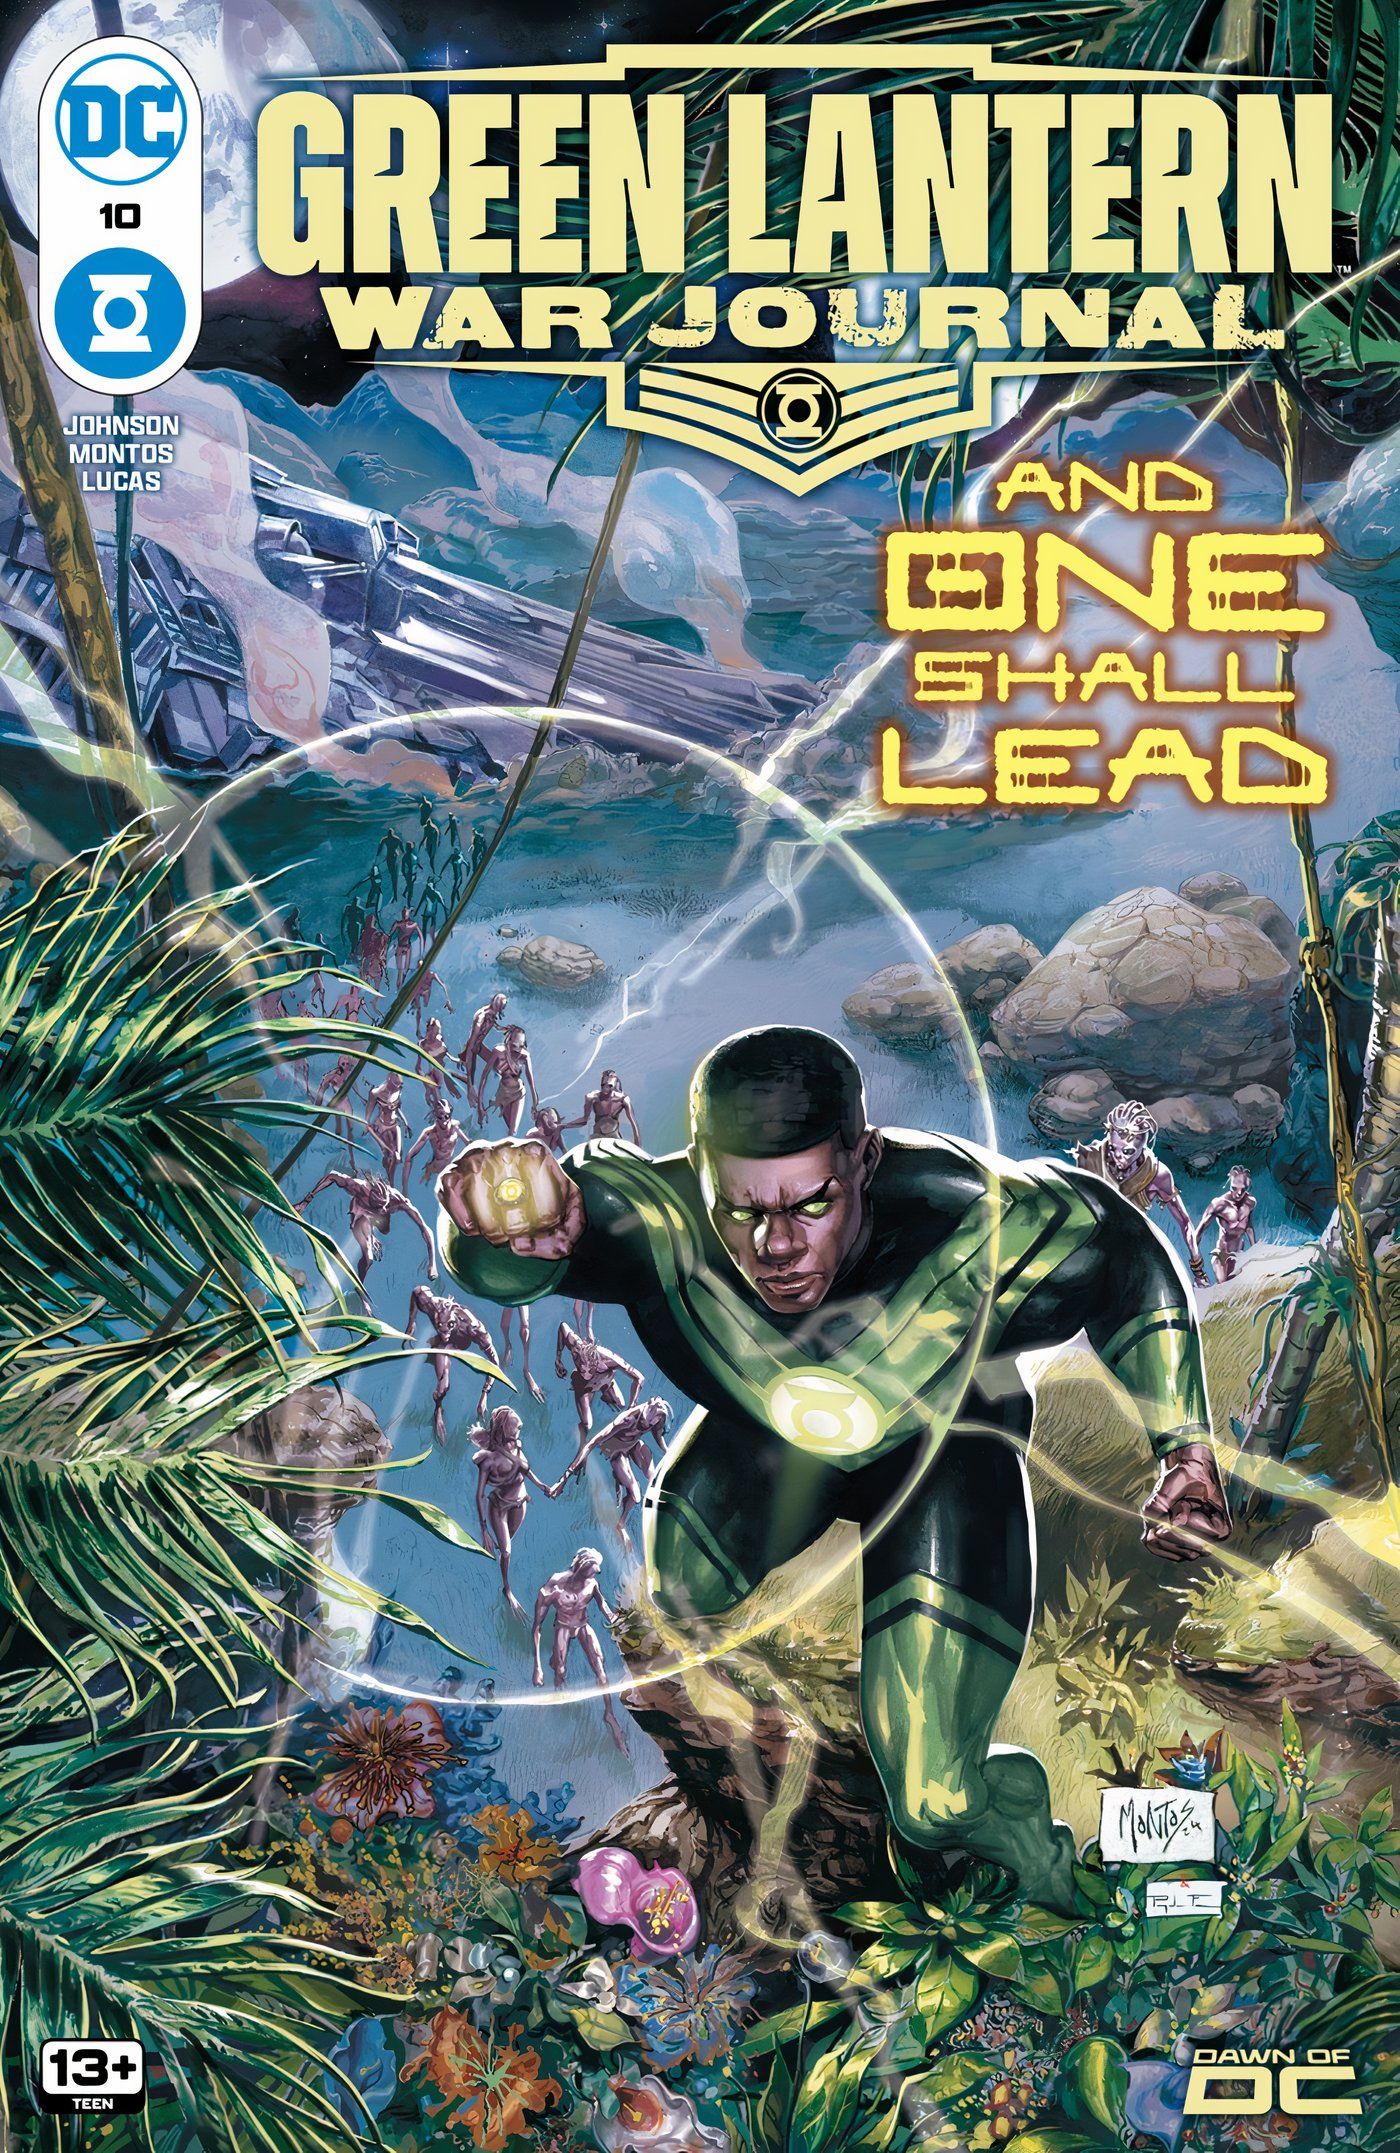 Capa principal do Diário de Guerra do Lanterna Verde 10: John Stewart voando sobre um planeta alienígena com flora.